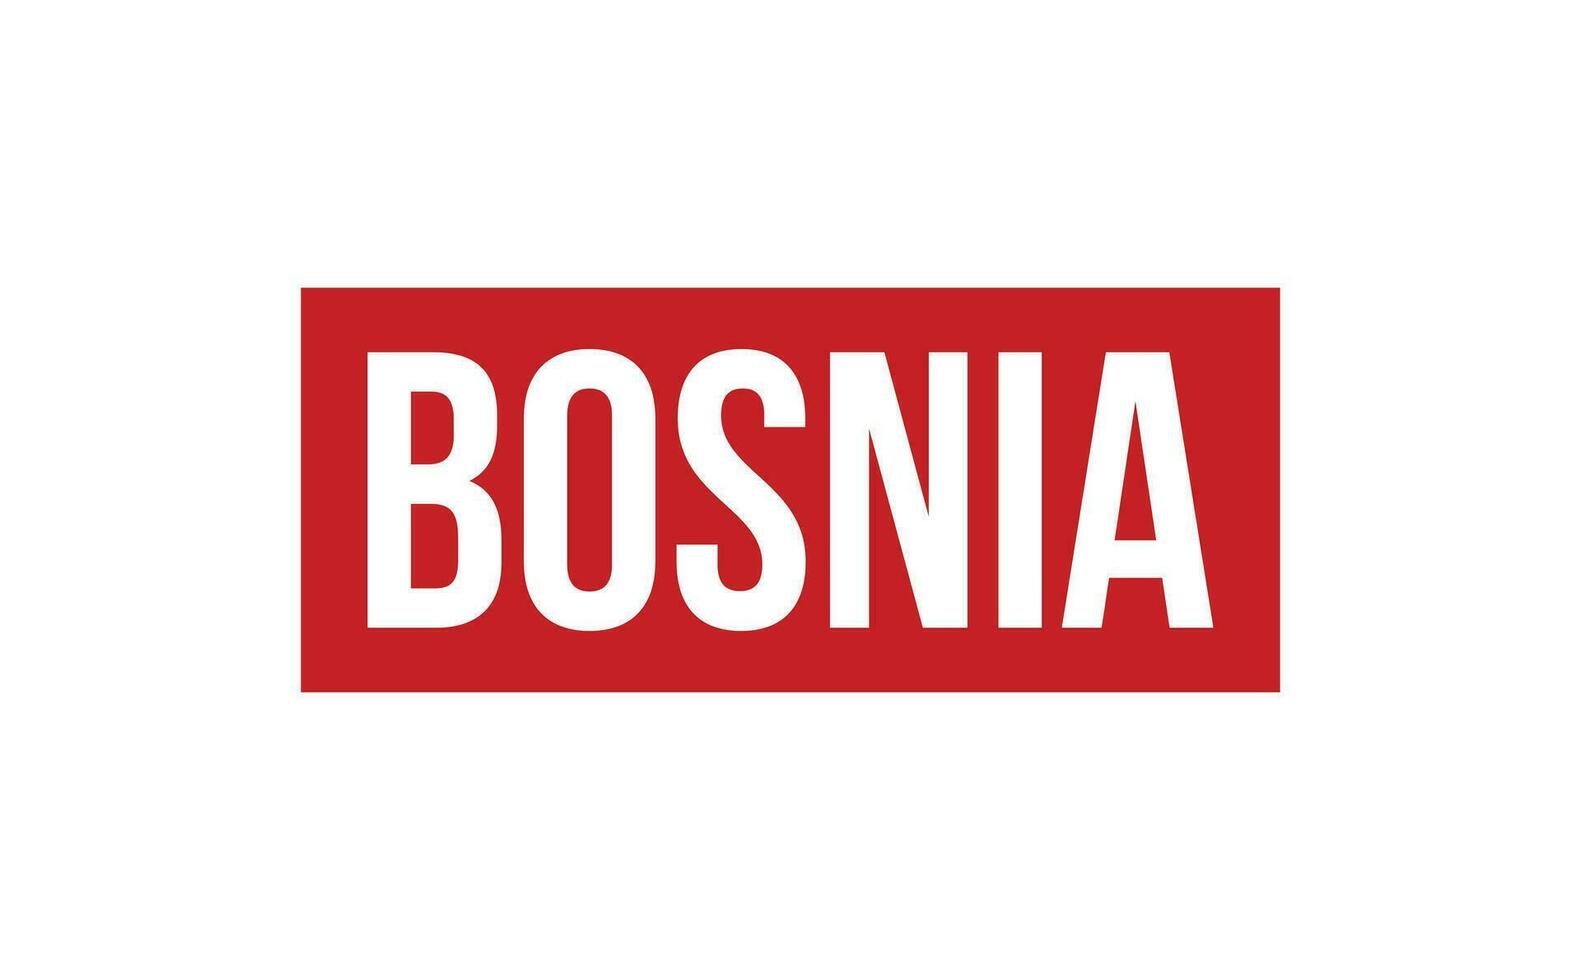 Bósnia borracha carimbo foca vetor